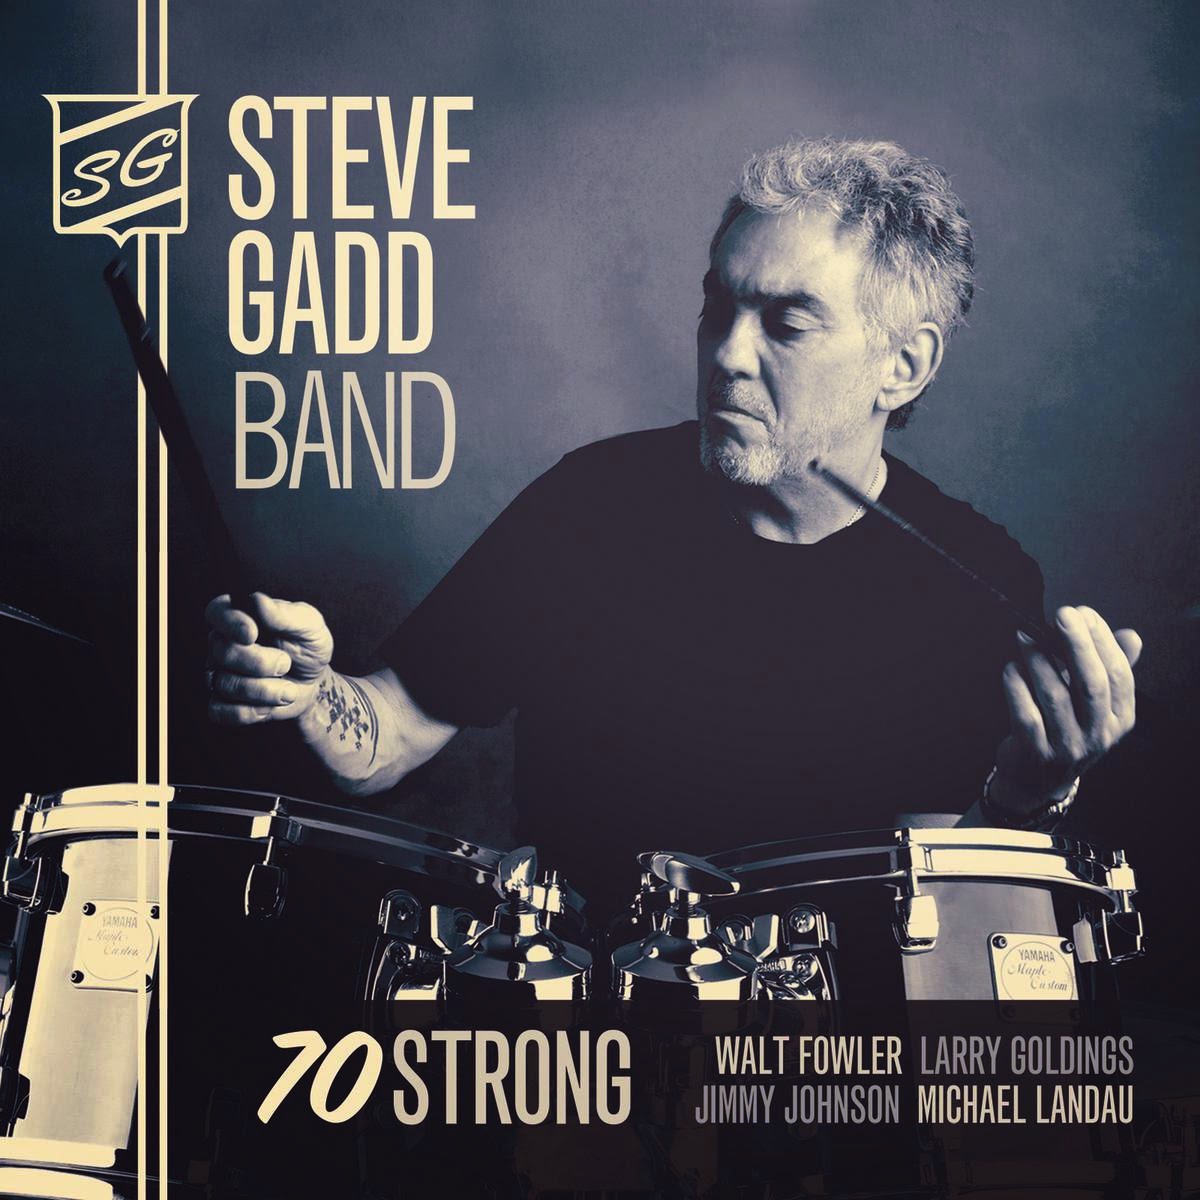 STEVE GADD - Steve Gadd Band : 70 Strong cover 